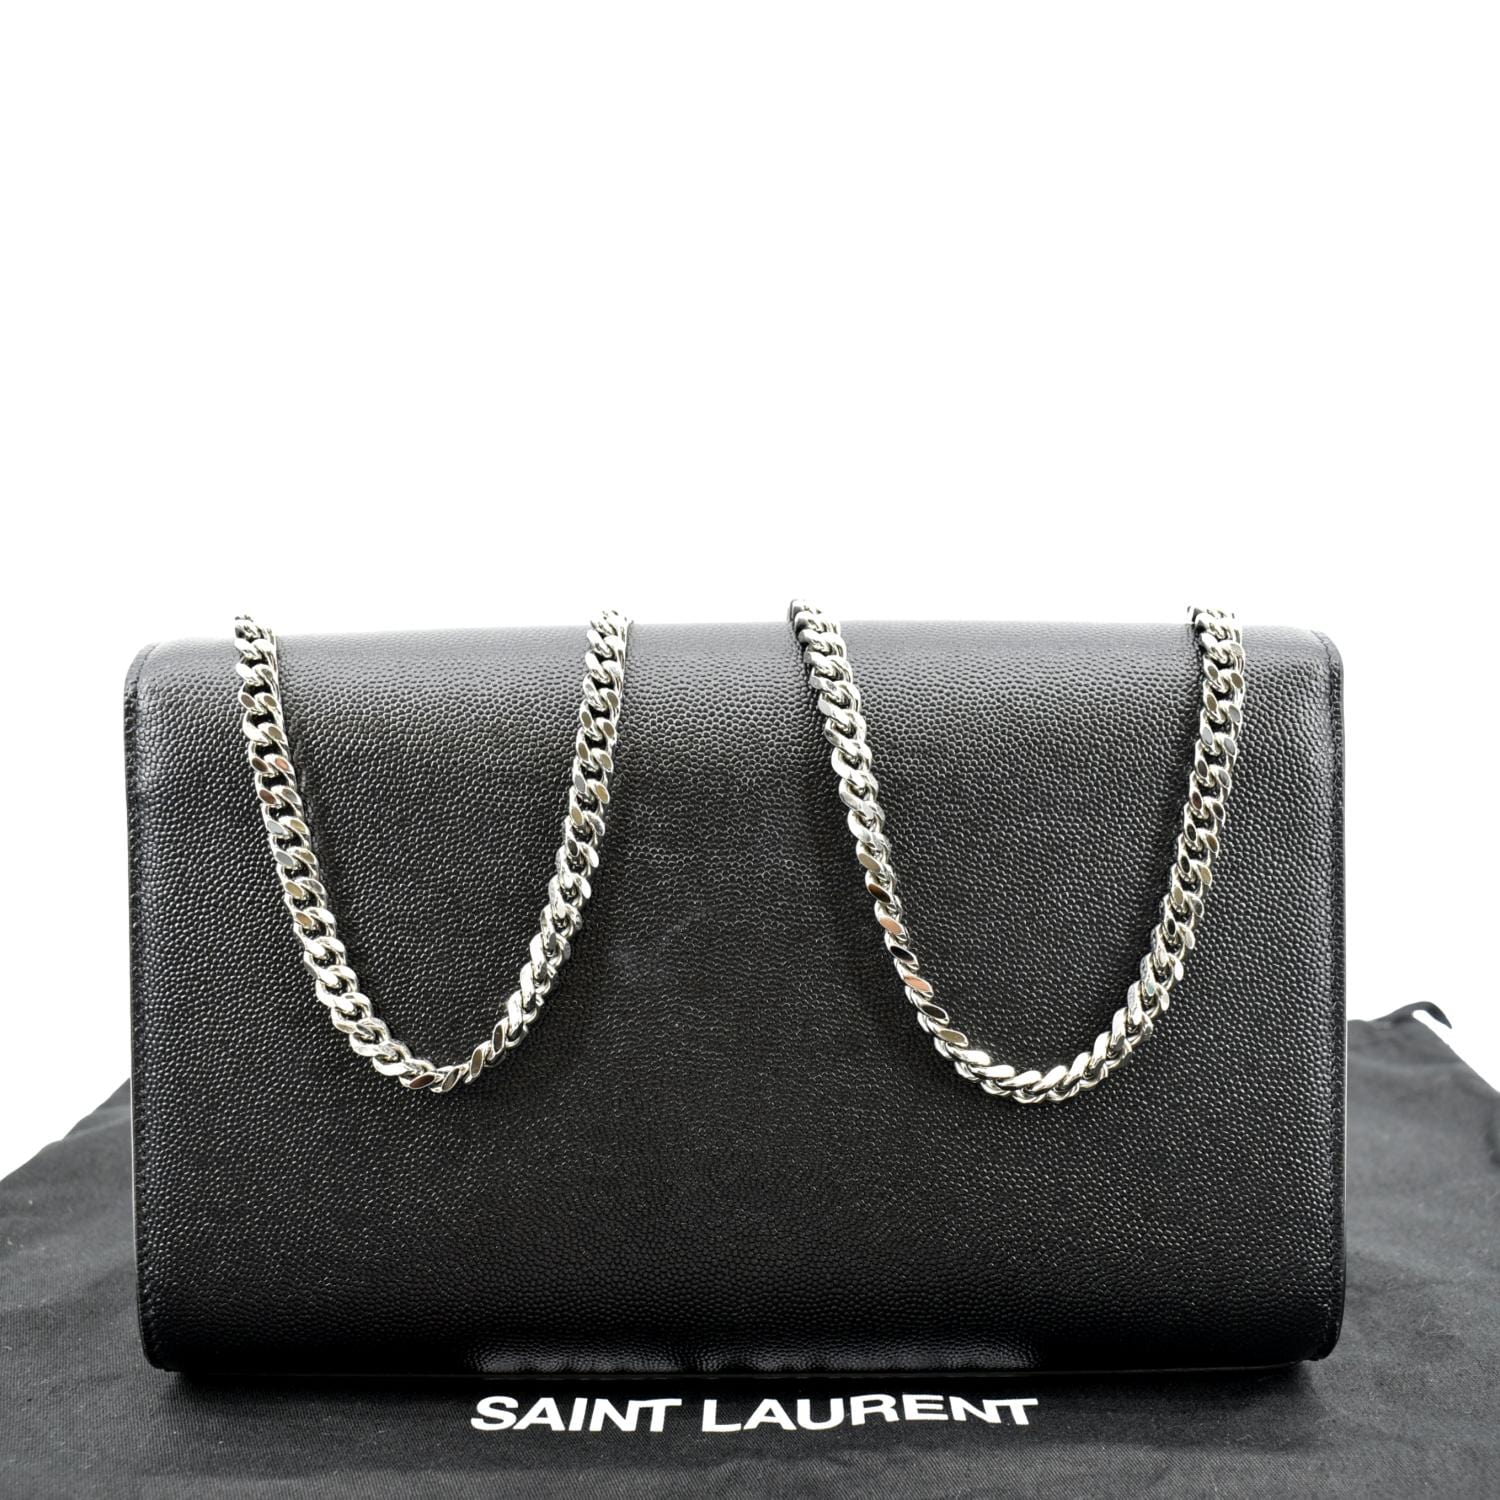 Saint Laurent Women's Small Kate Monogram Leather Chain Shoulder